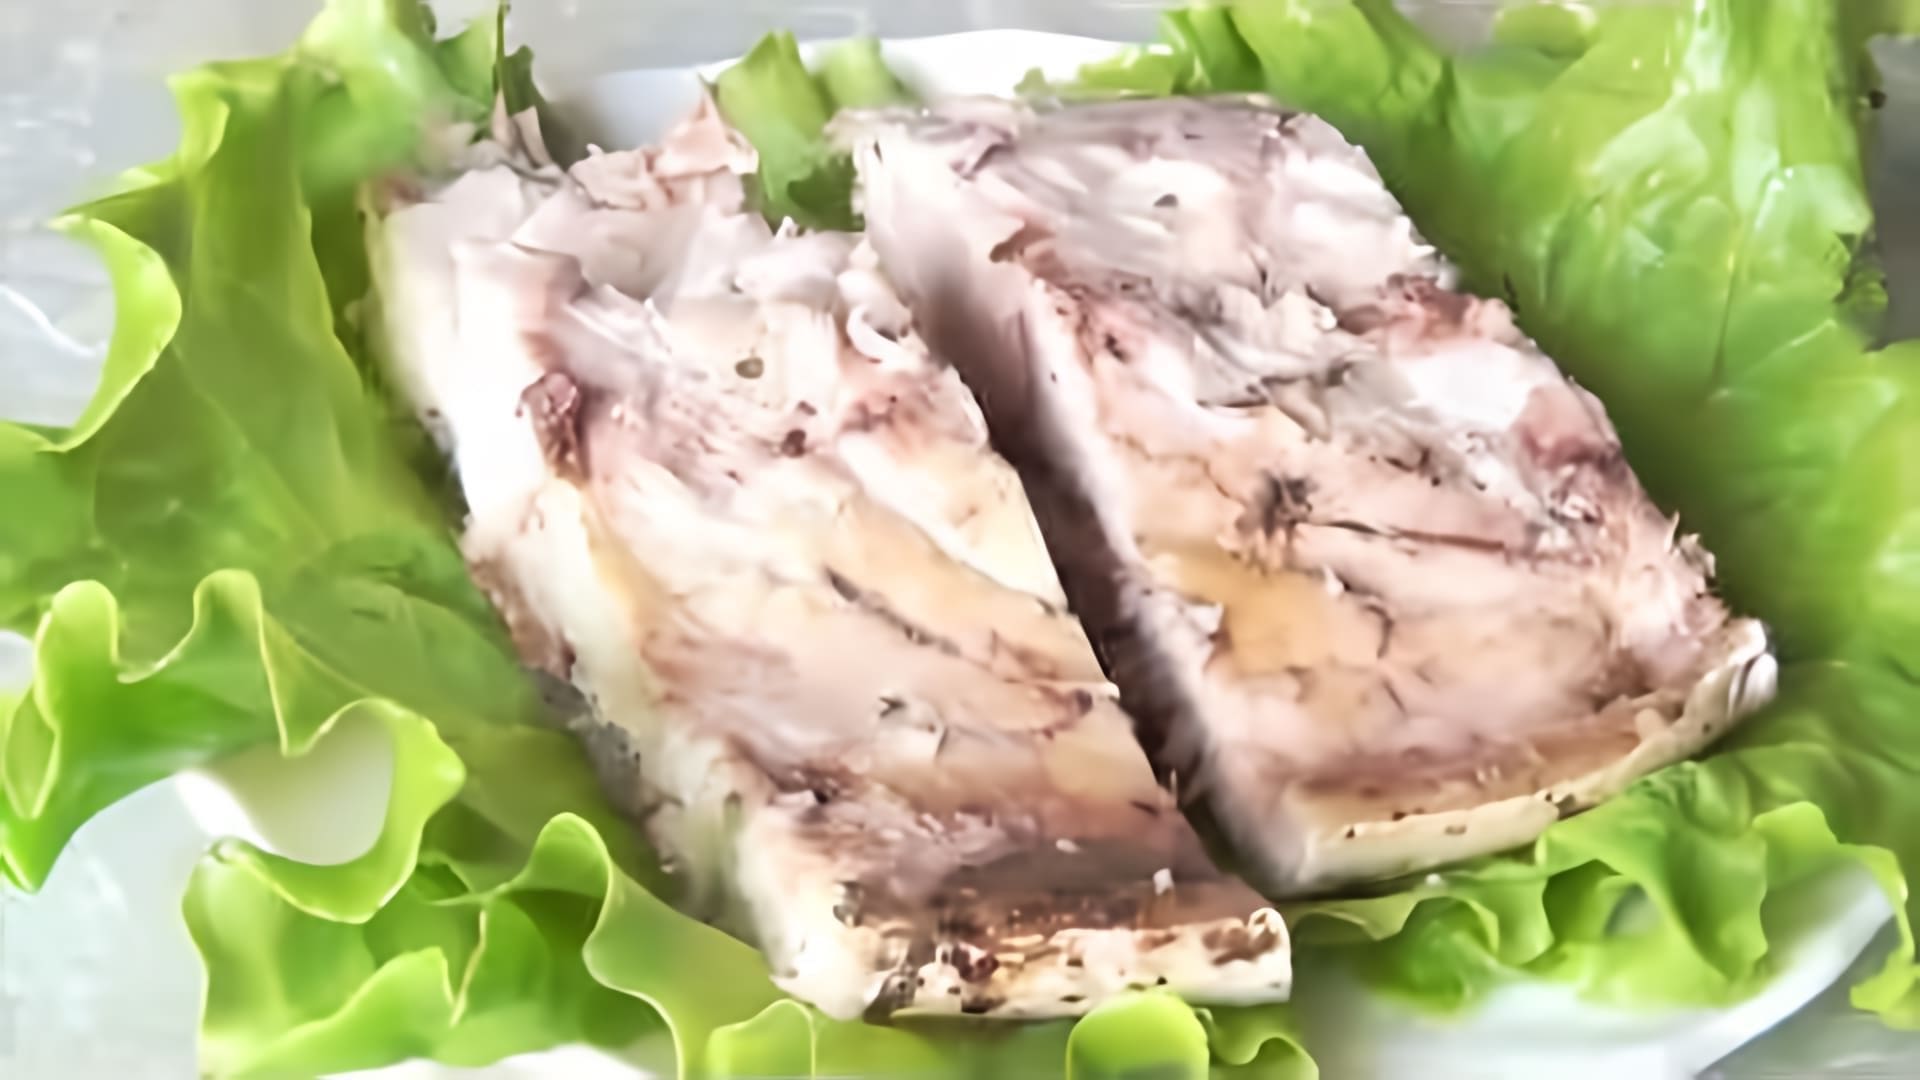 В этом видео демонстрируется рецепт приготовления рыбы лакедра, также известной как желтохвост